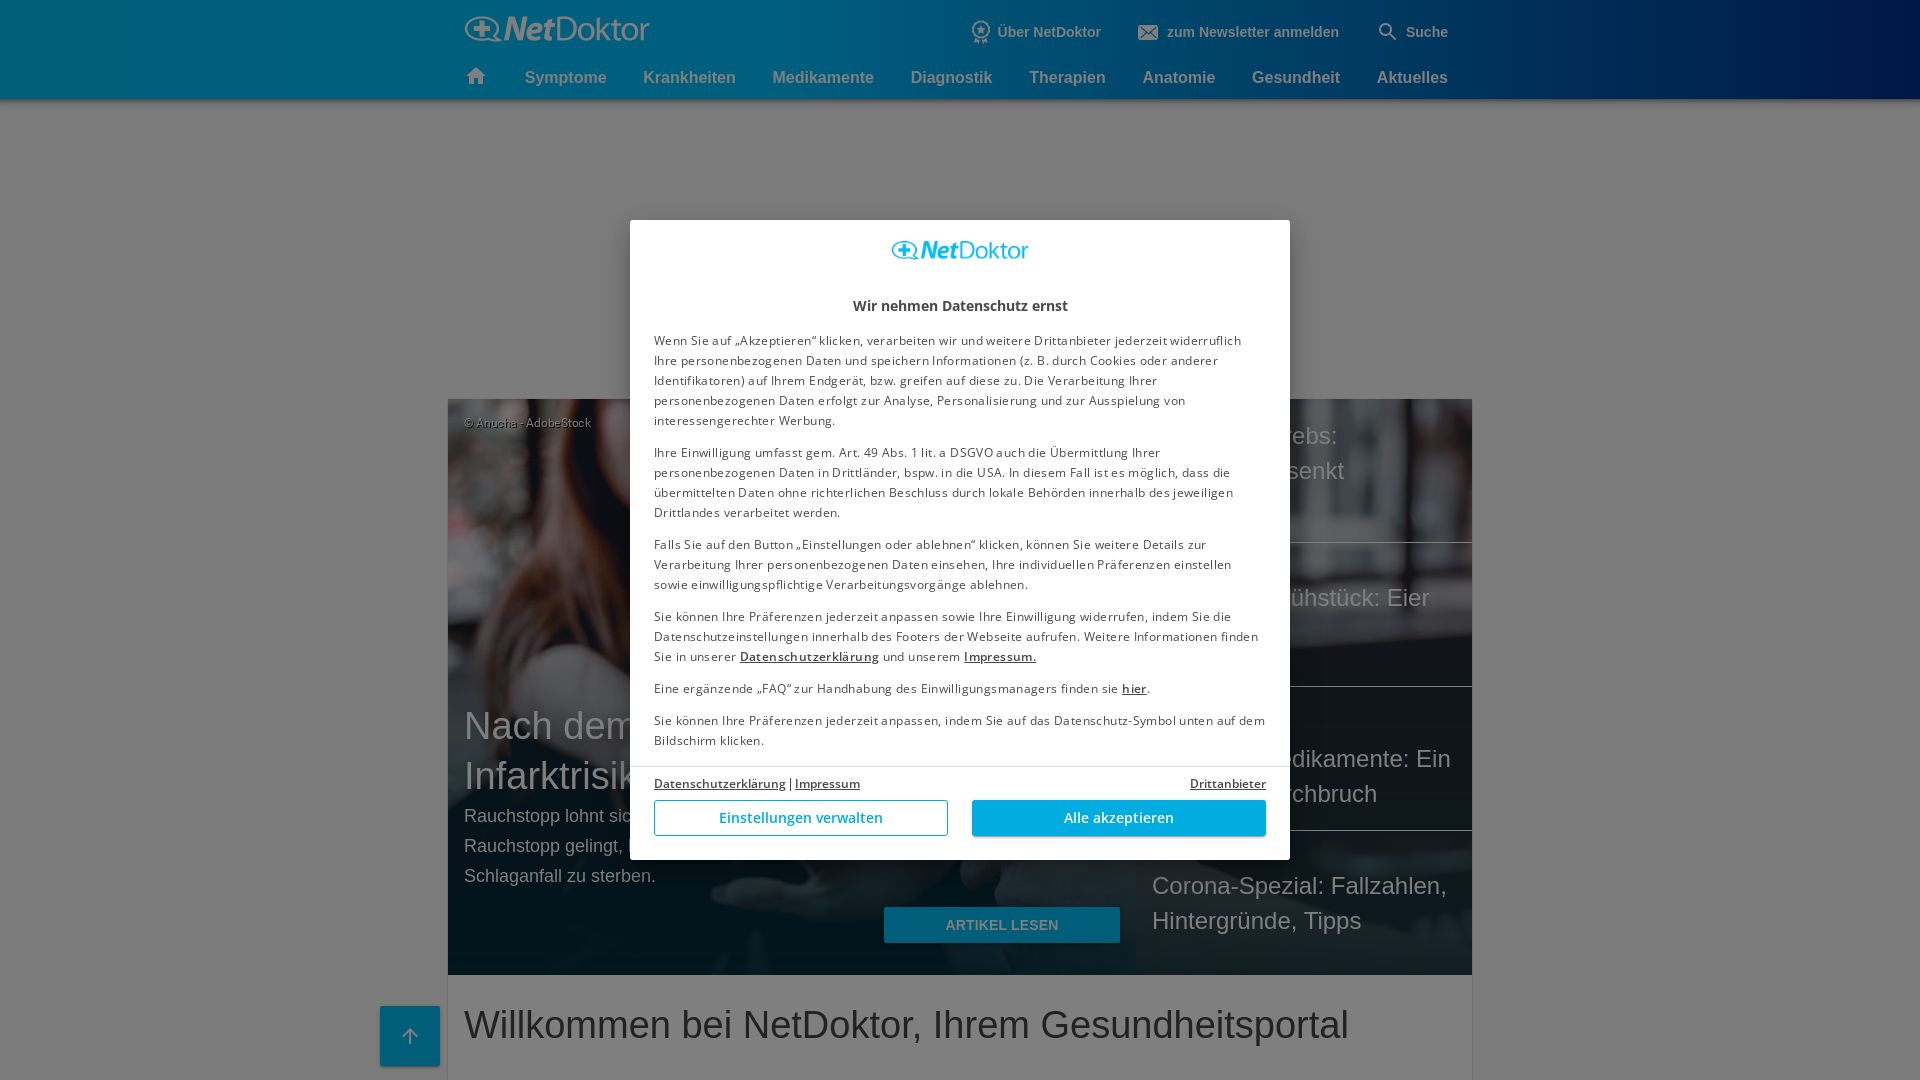 вебсайт netdoktor.de Є   ONLINE